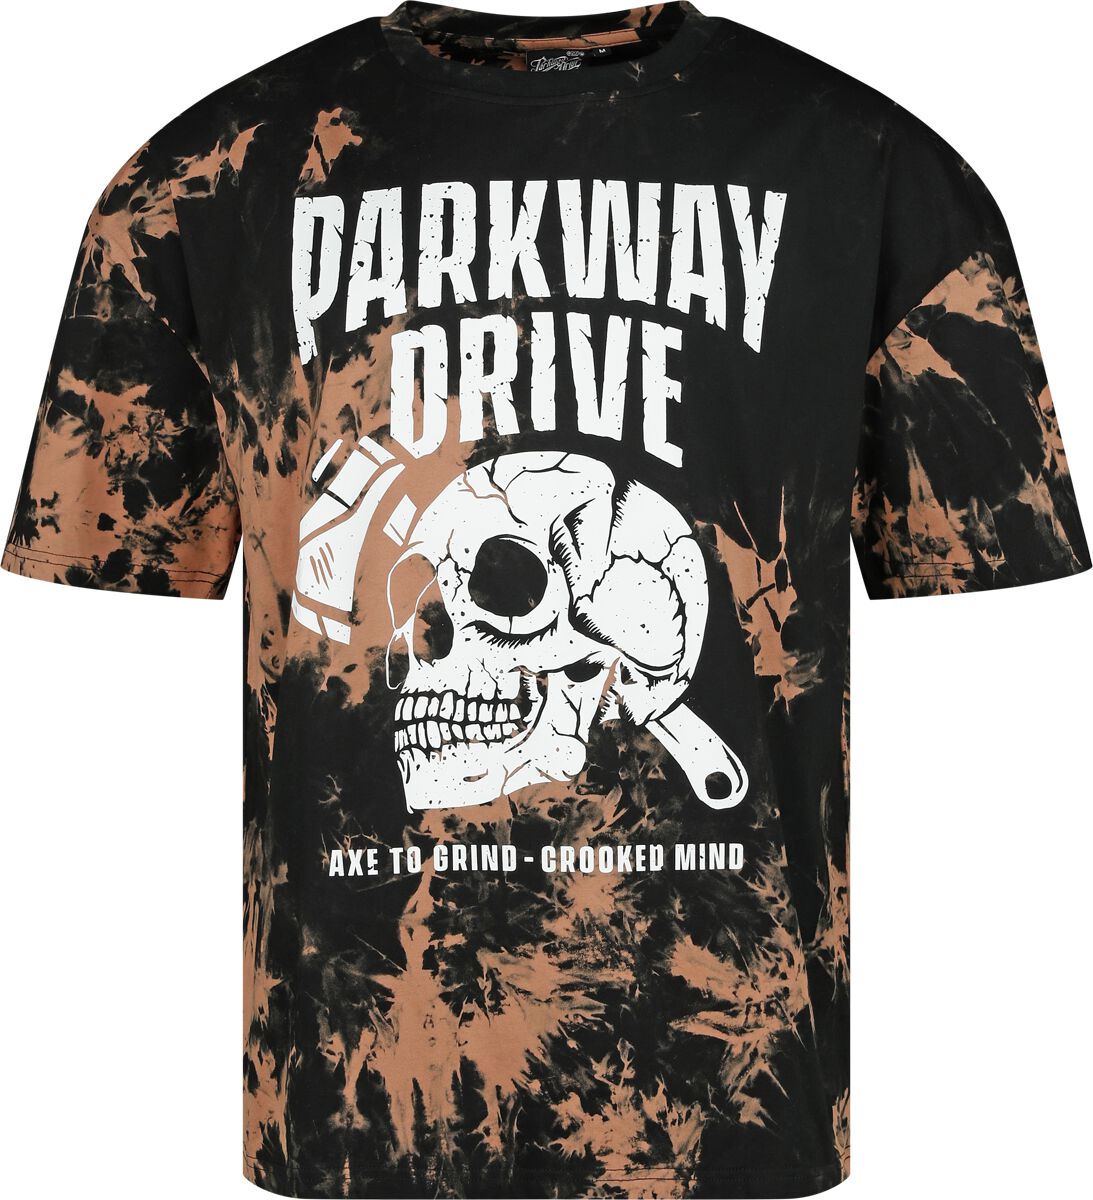 Parkway Drive T-Shirt - S bis 3XL - für Männer - Größe S - schwarz/braun  - EMP exklusives Merchandise!